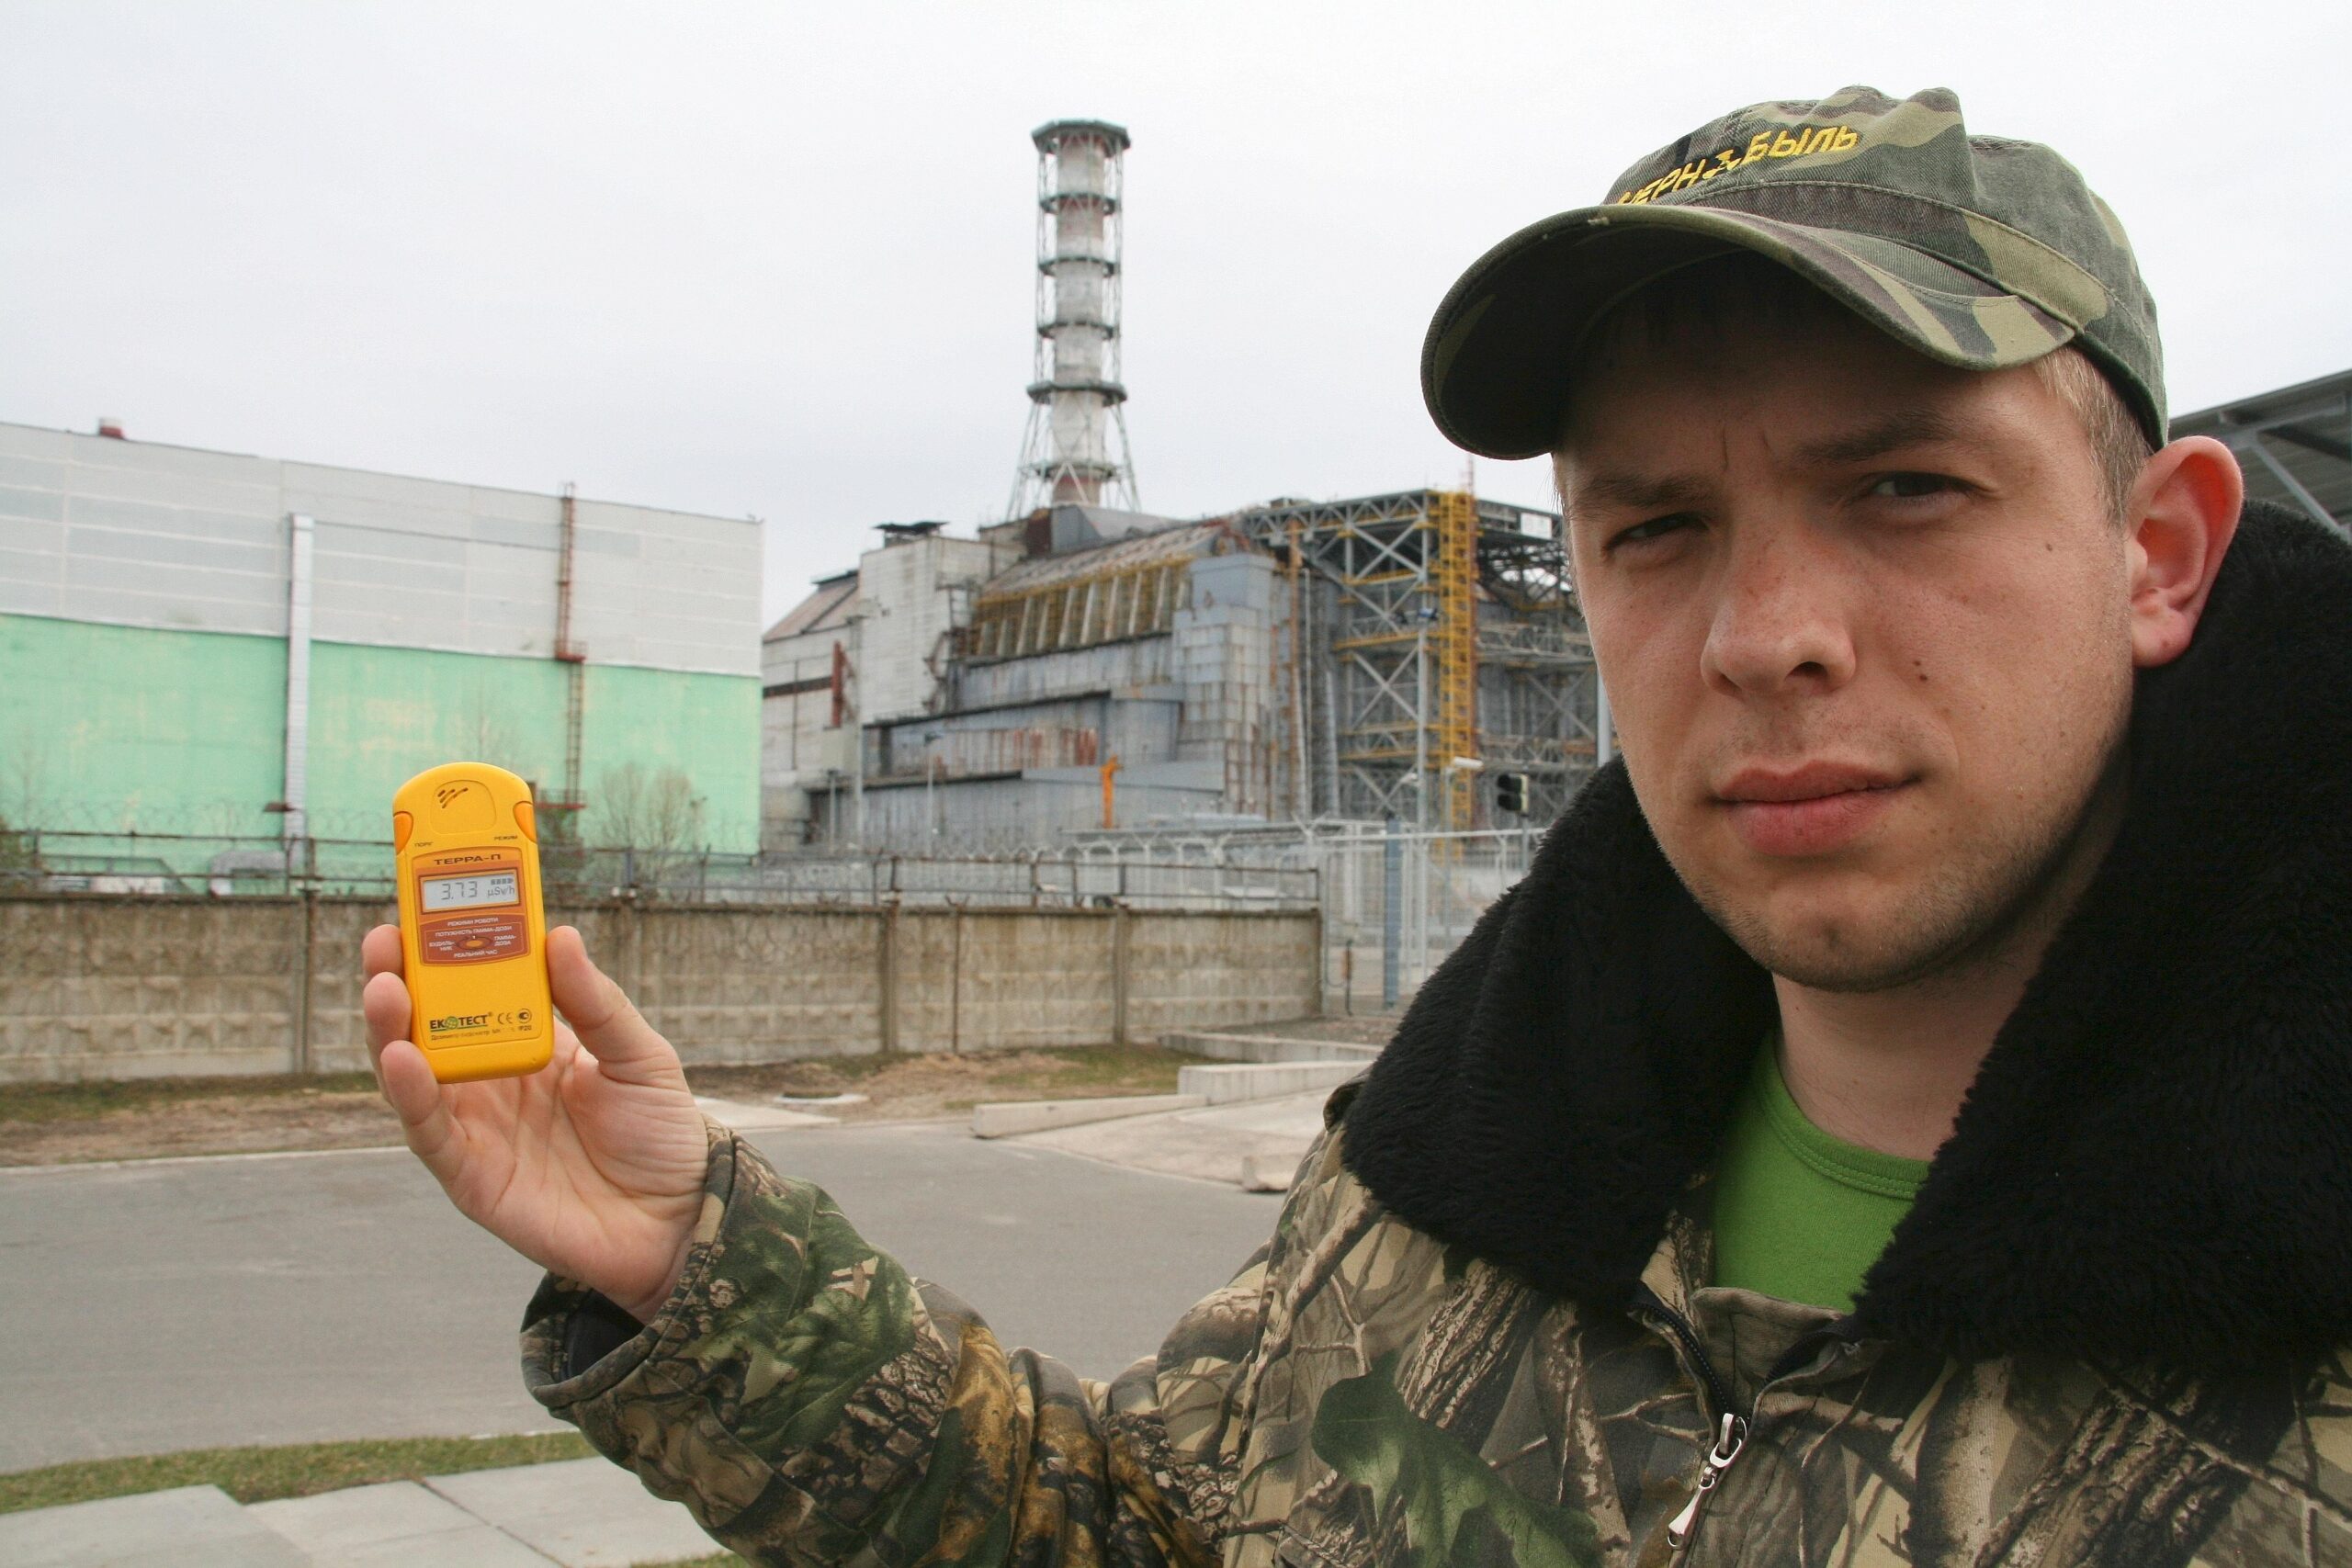 25 Jahre nach dem Unglück: Besuch in der Sperrzone von Tschernobyl.Tour-Guide Nikolai Fomin (24) vor dem Unglücksreaktor. Das Strahlenmessgerät zeigt 3,73 Microsievert pro Stunde. Das ist das 100fache der natürlichen Strahlung.